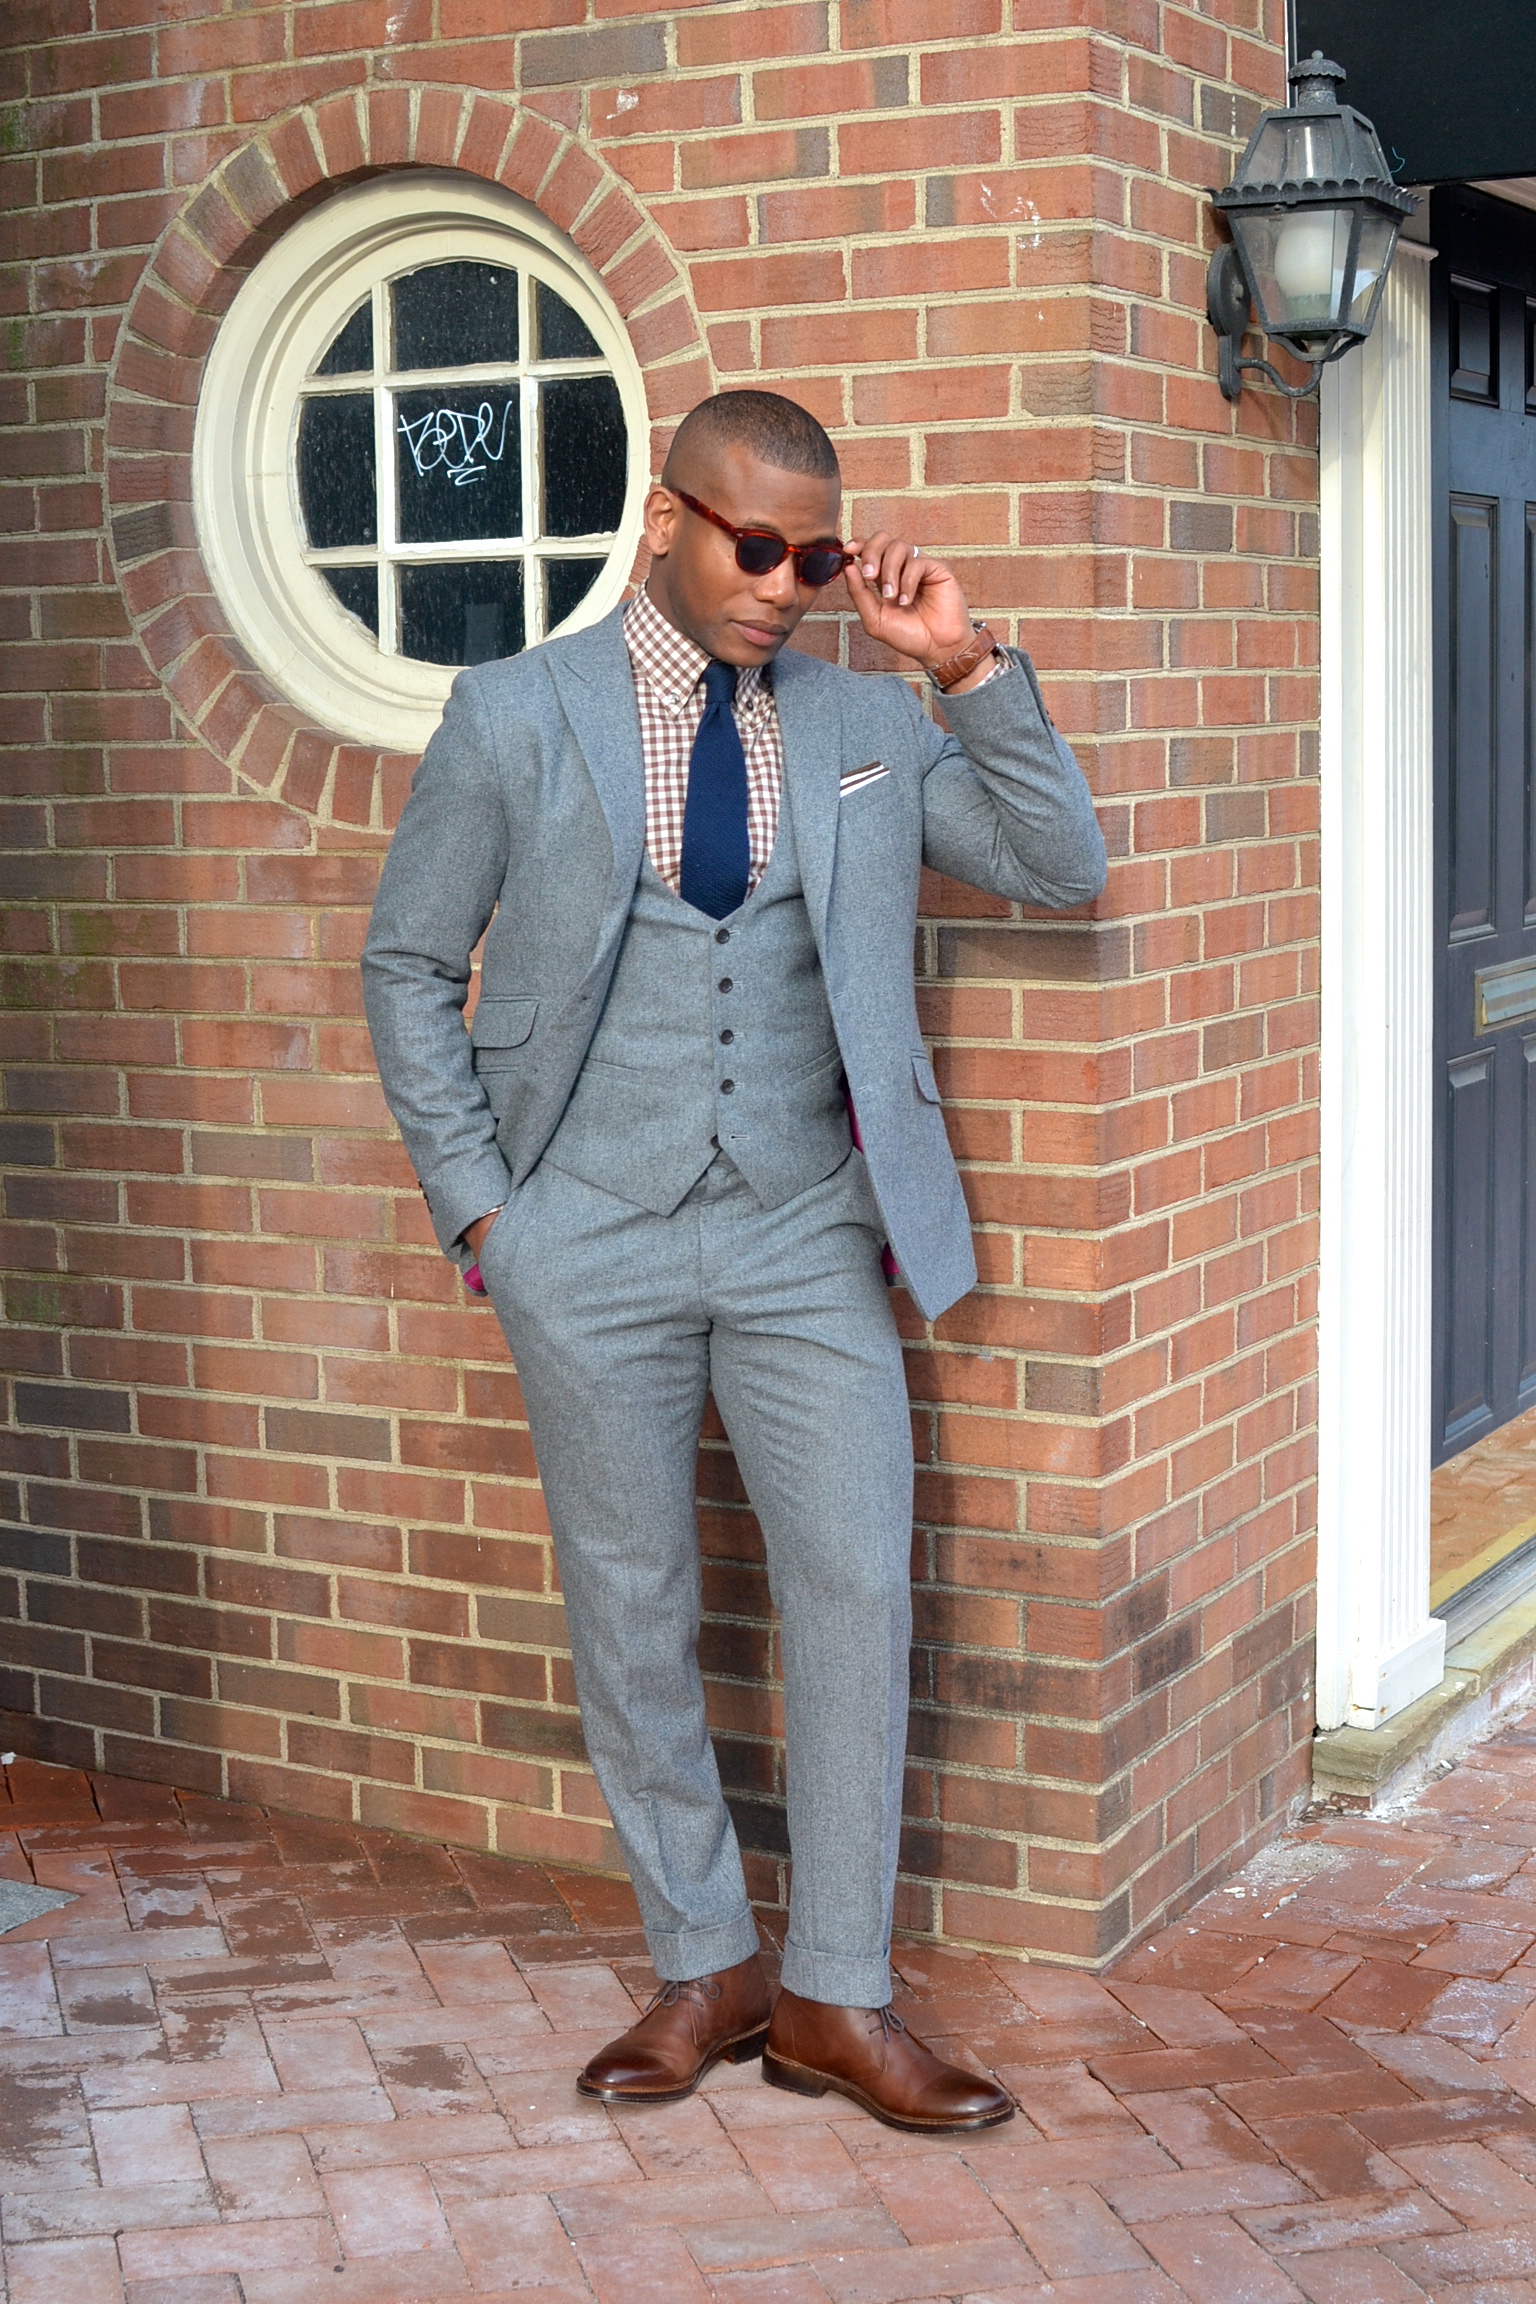 Chukka Boots & Winter Suits 3 Ways – Men's Style Pro | Men's Style Blog ...